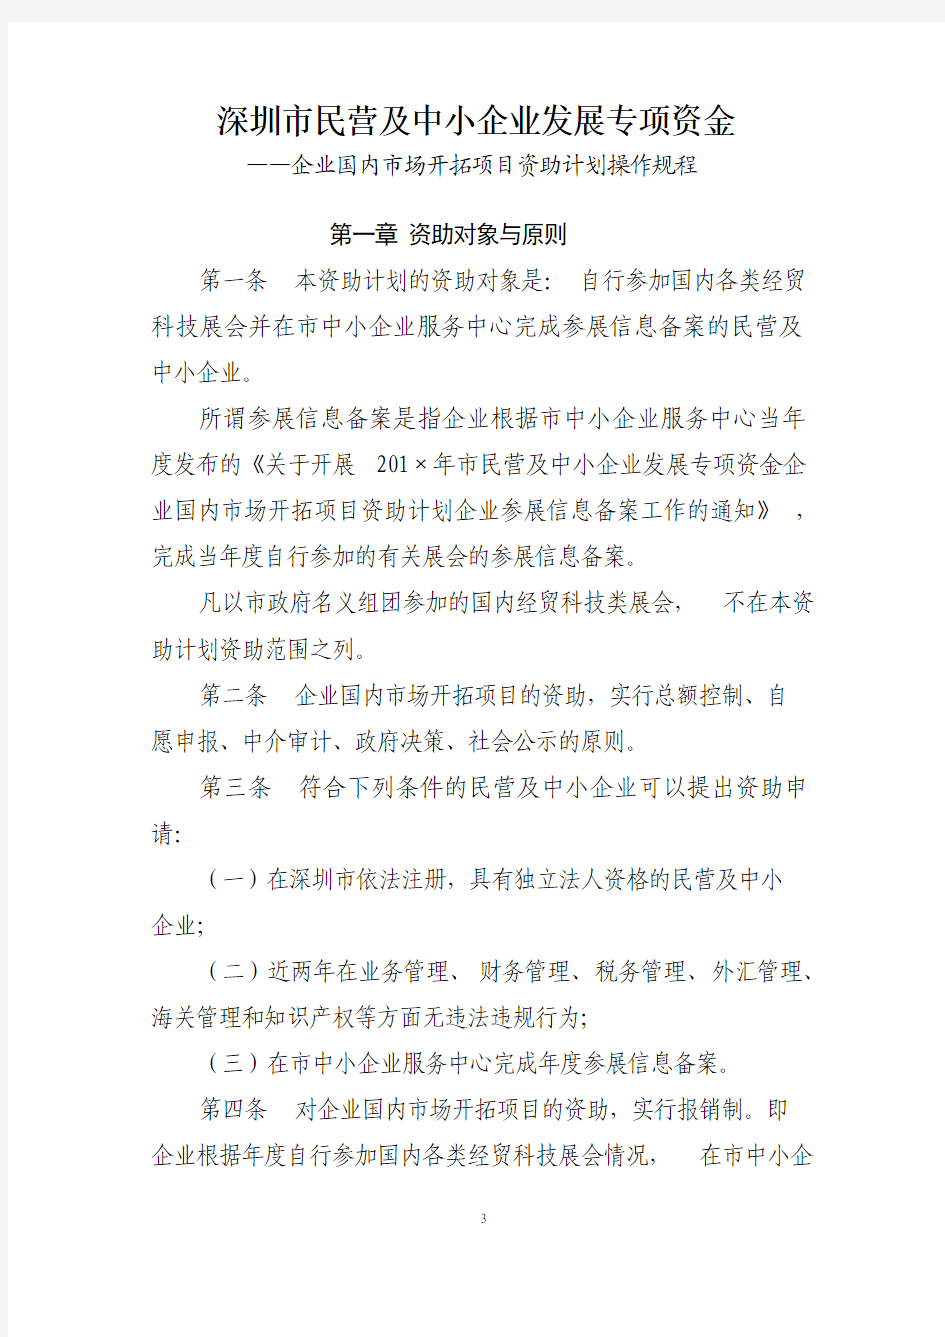 深圳市民营及中小企业发展专项资金资助计划操作规程